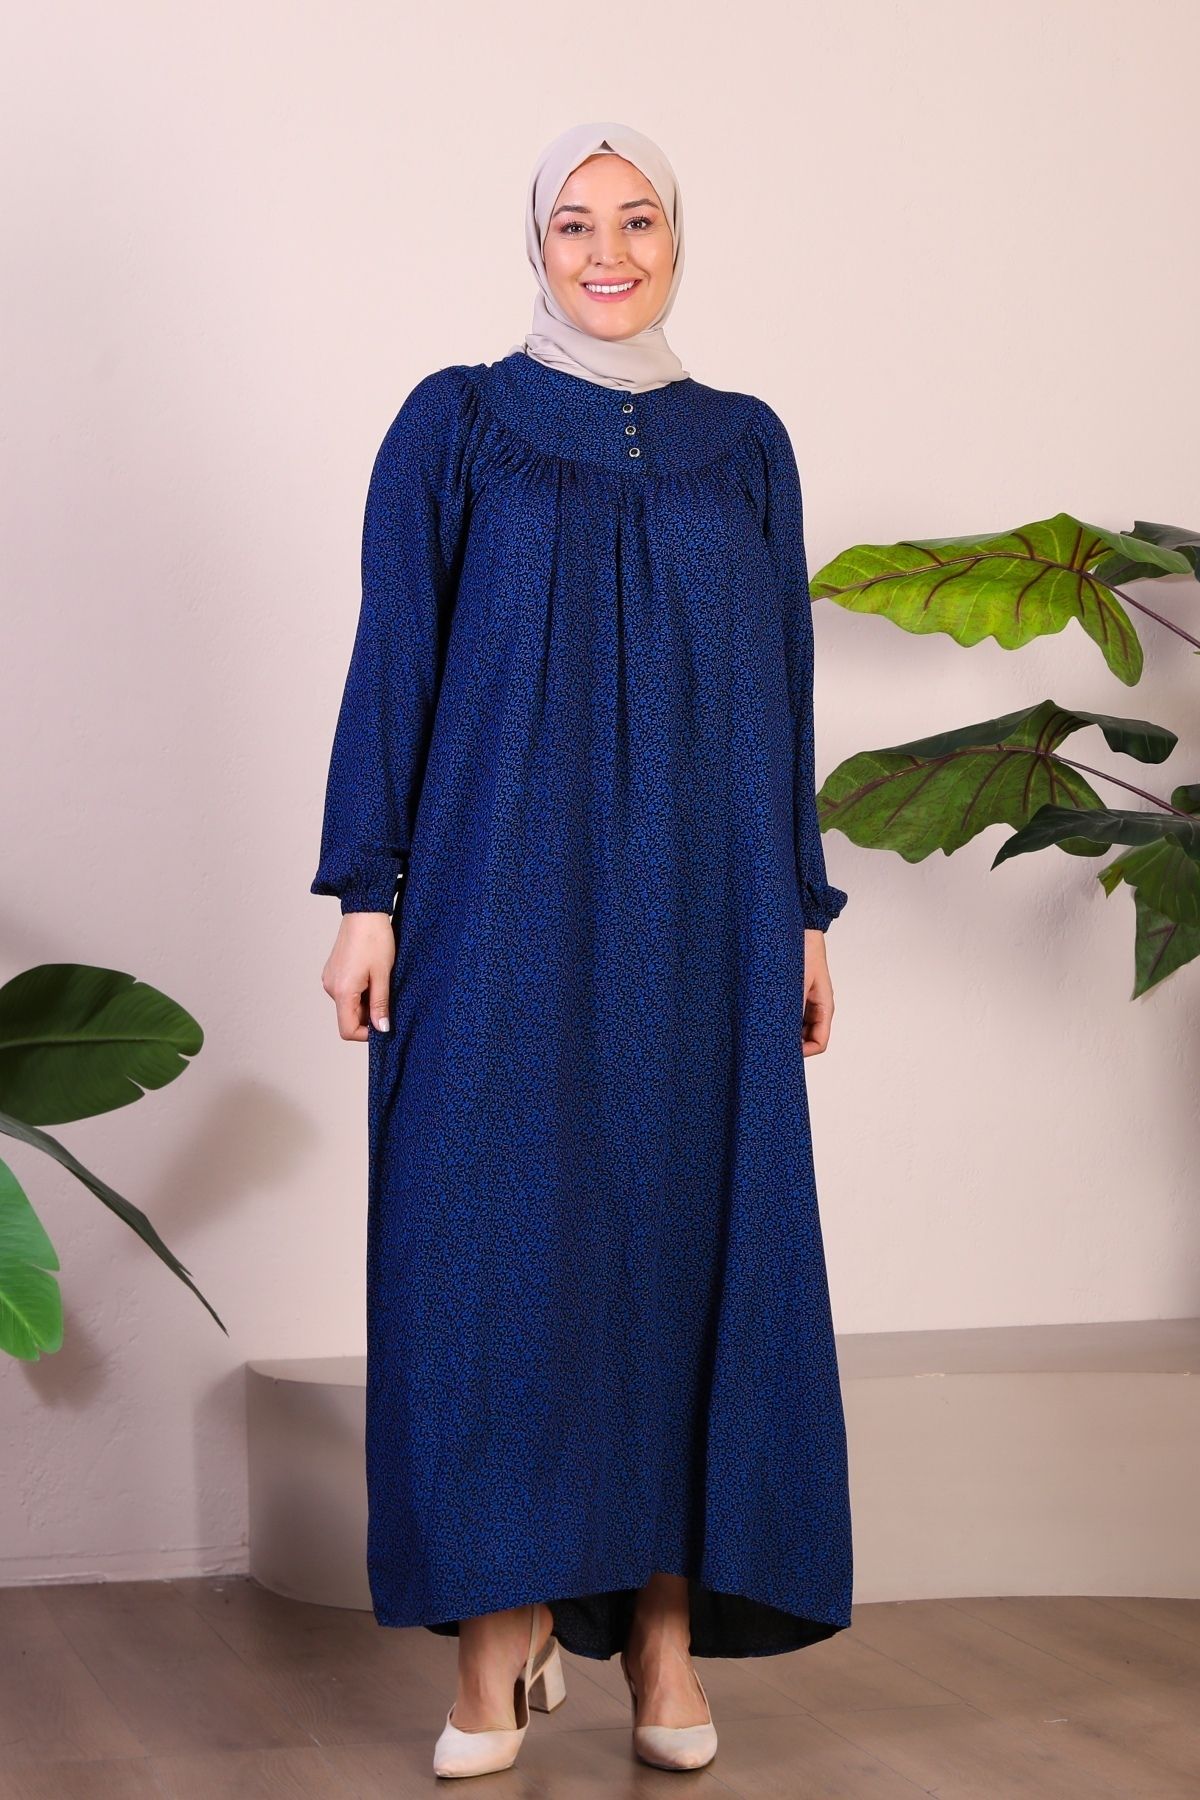 Ferace Uzun Anne Giyim Buyuk Beden Kadin Tesettur Elbise Mavi